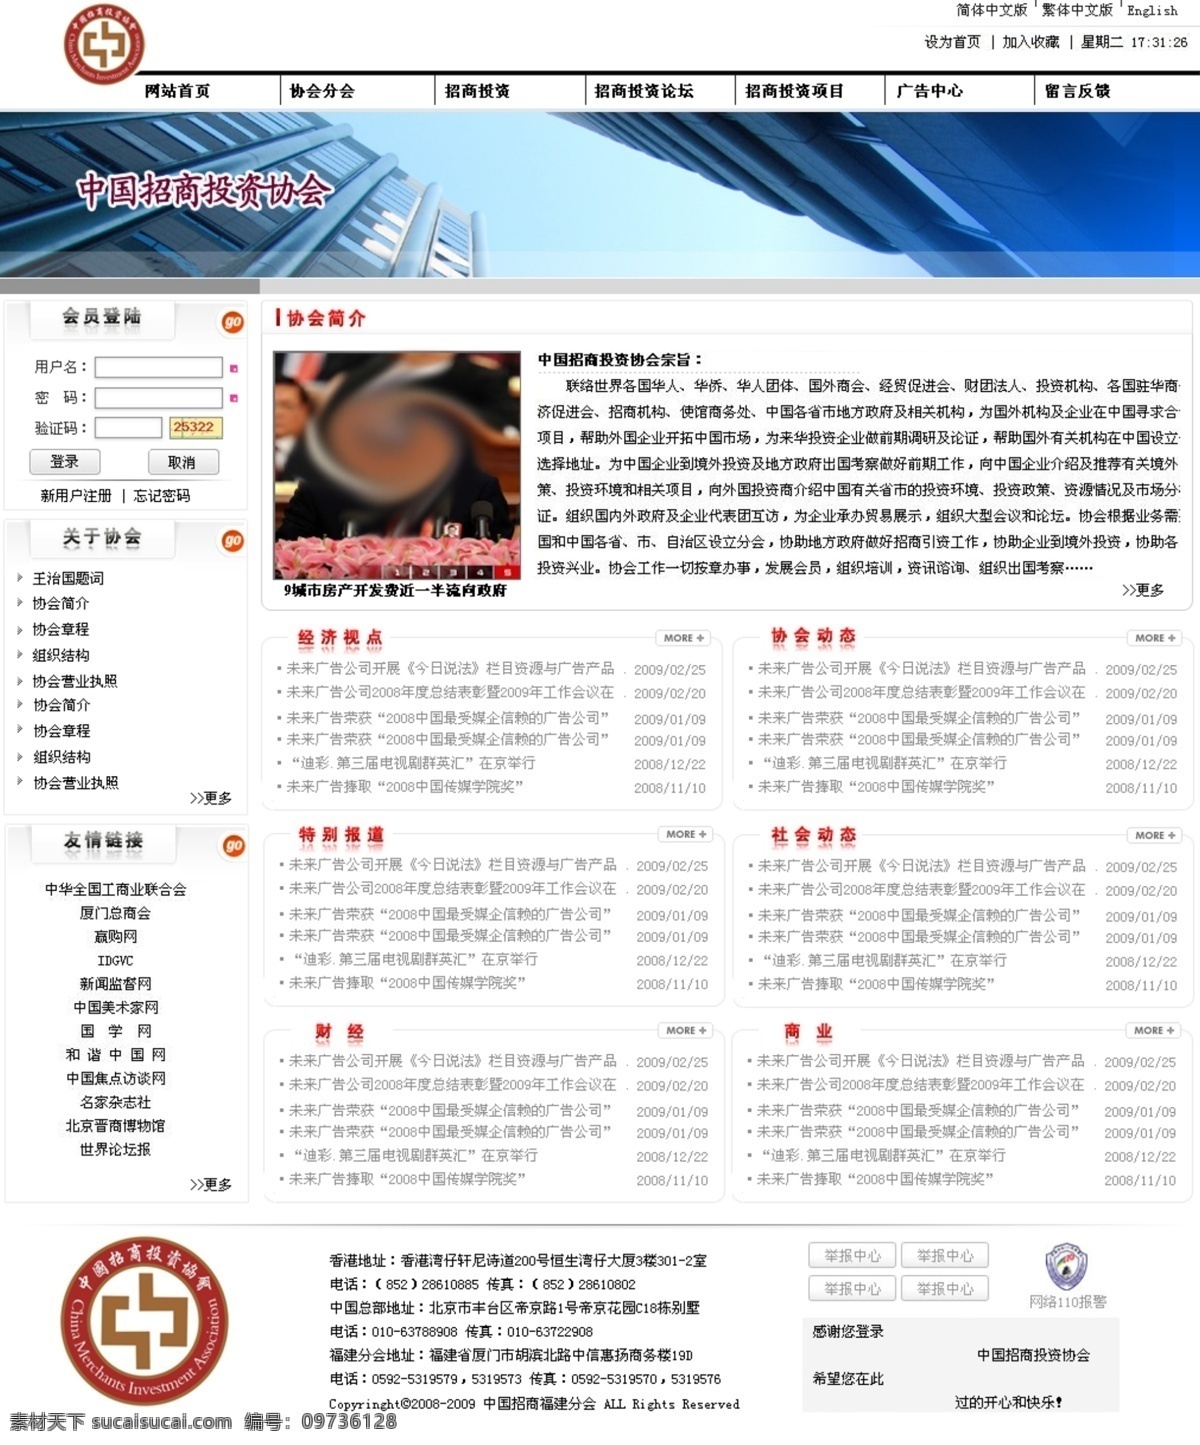 招商投资 网 网页模板 网站模板 源文件 政府网站 中文模版 中国风格模板